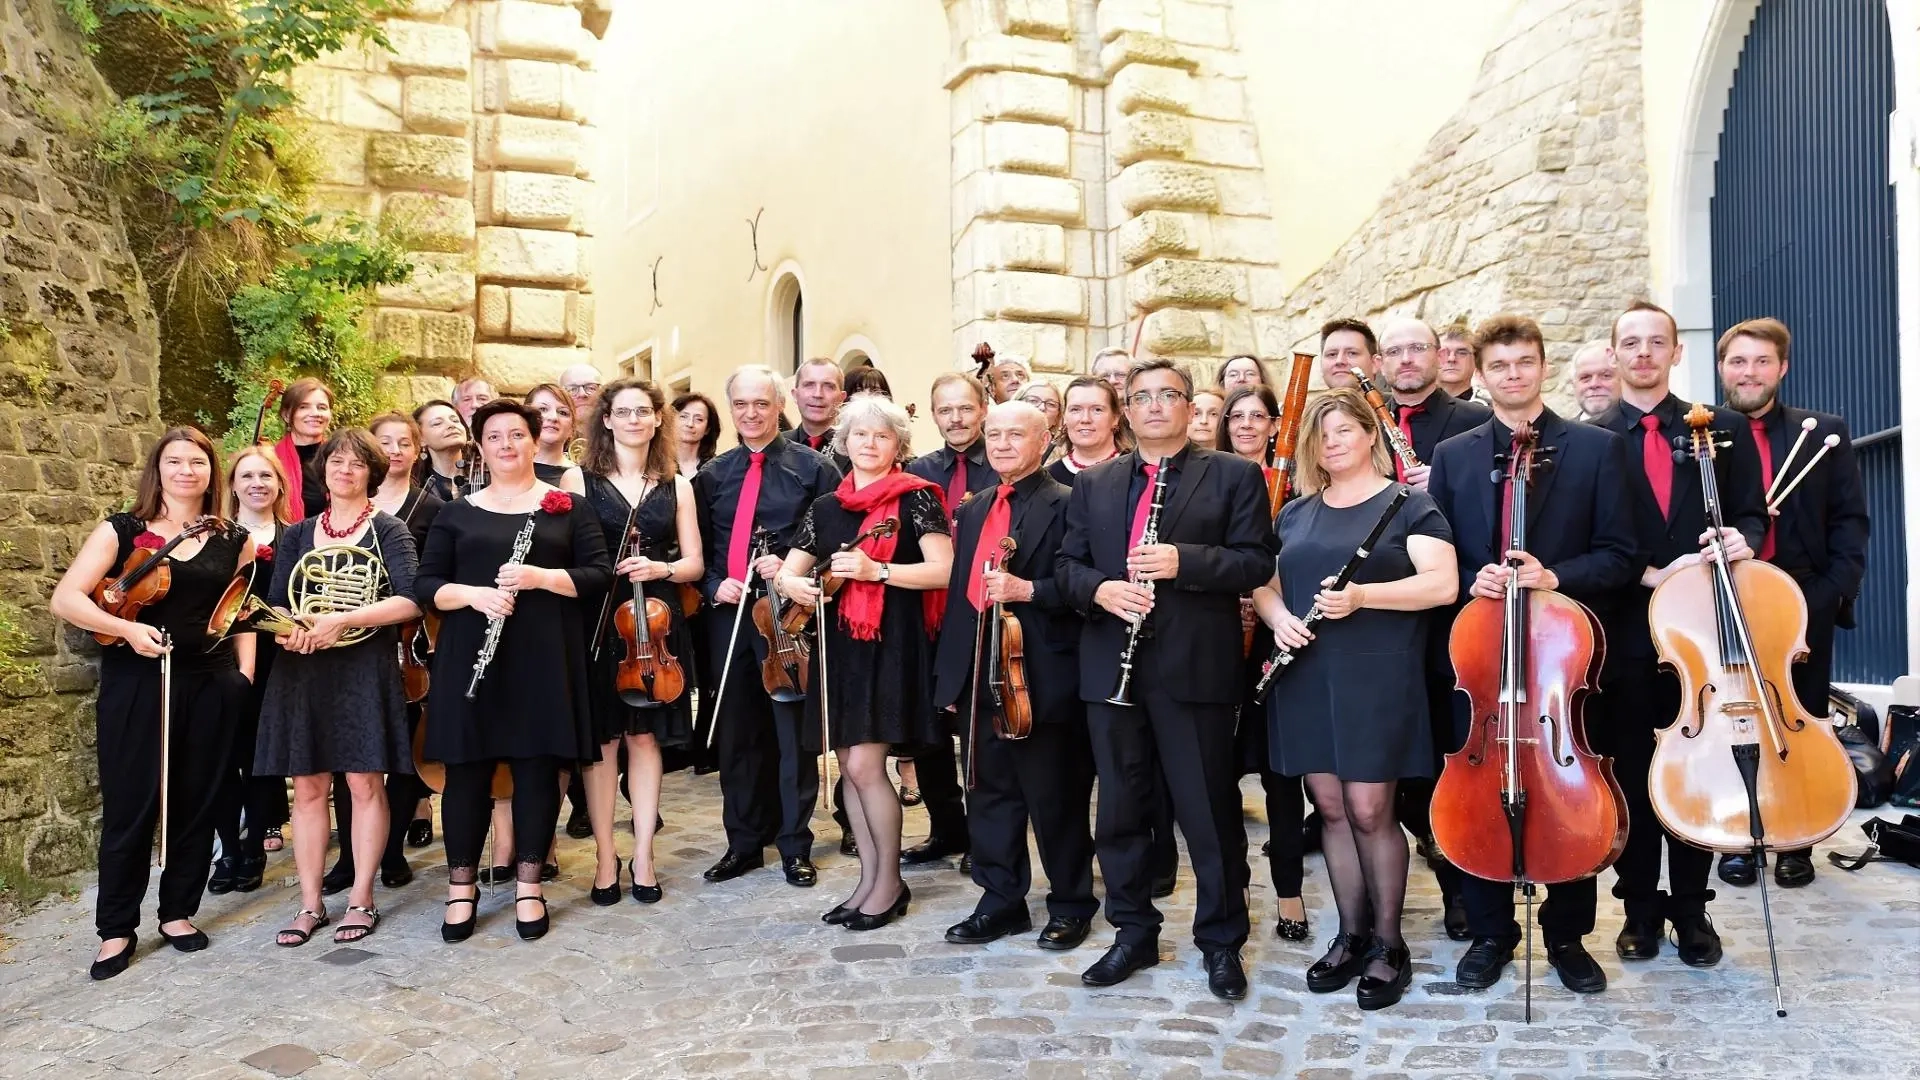 Une partie de l'orchestre estro armonico se trouve à l'entrée d'un château au Luxembourg.